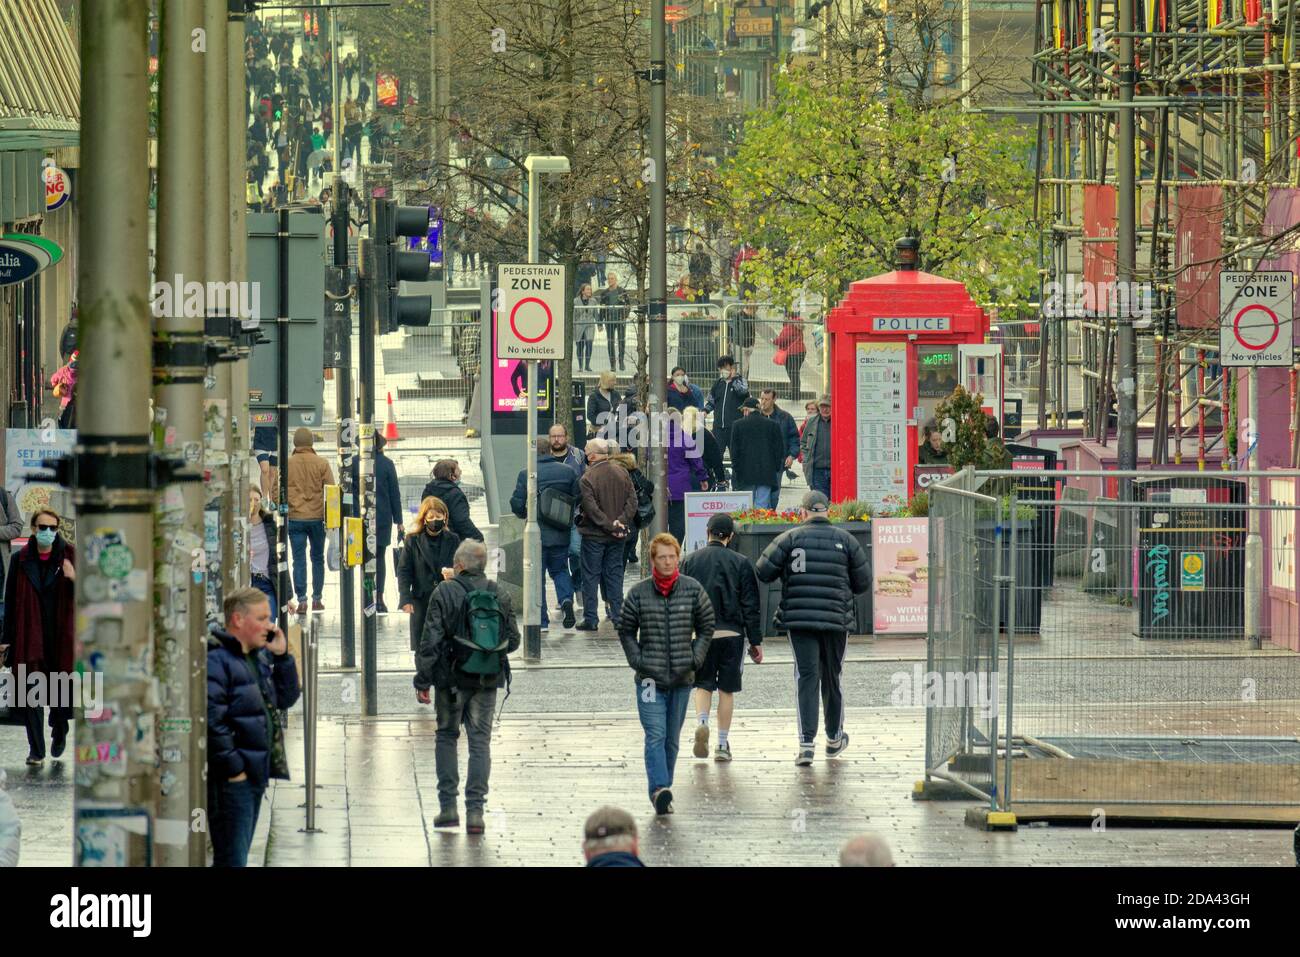 Glasgow, Écosse, Royaume-Uni. 9 novembre, 2020: Météo au Royaume-Uni: La journée chaude a vu les gens récupérer les rues de la pandémie comme ils se sont remplis pendant la journée. Shopping dans la rue Sauchiehall. Crédit : Gerard Ferry/Alay Live News Banque D'Images